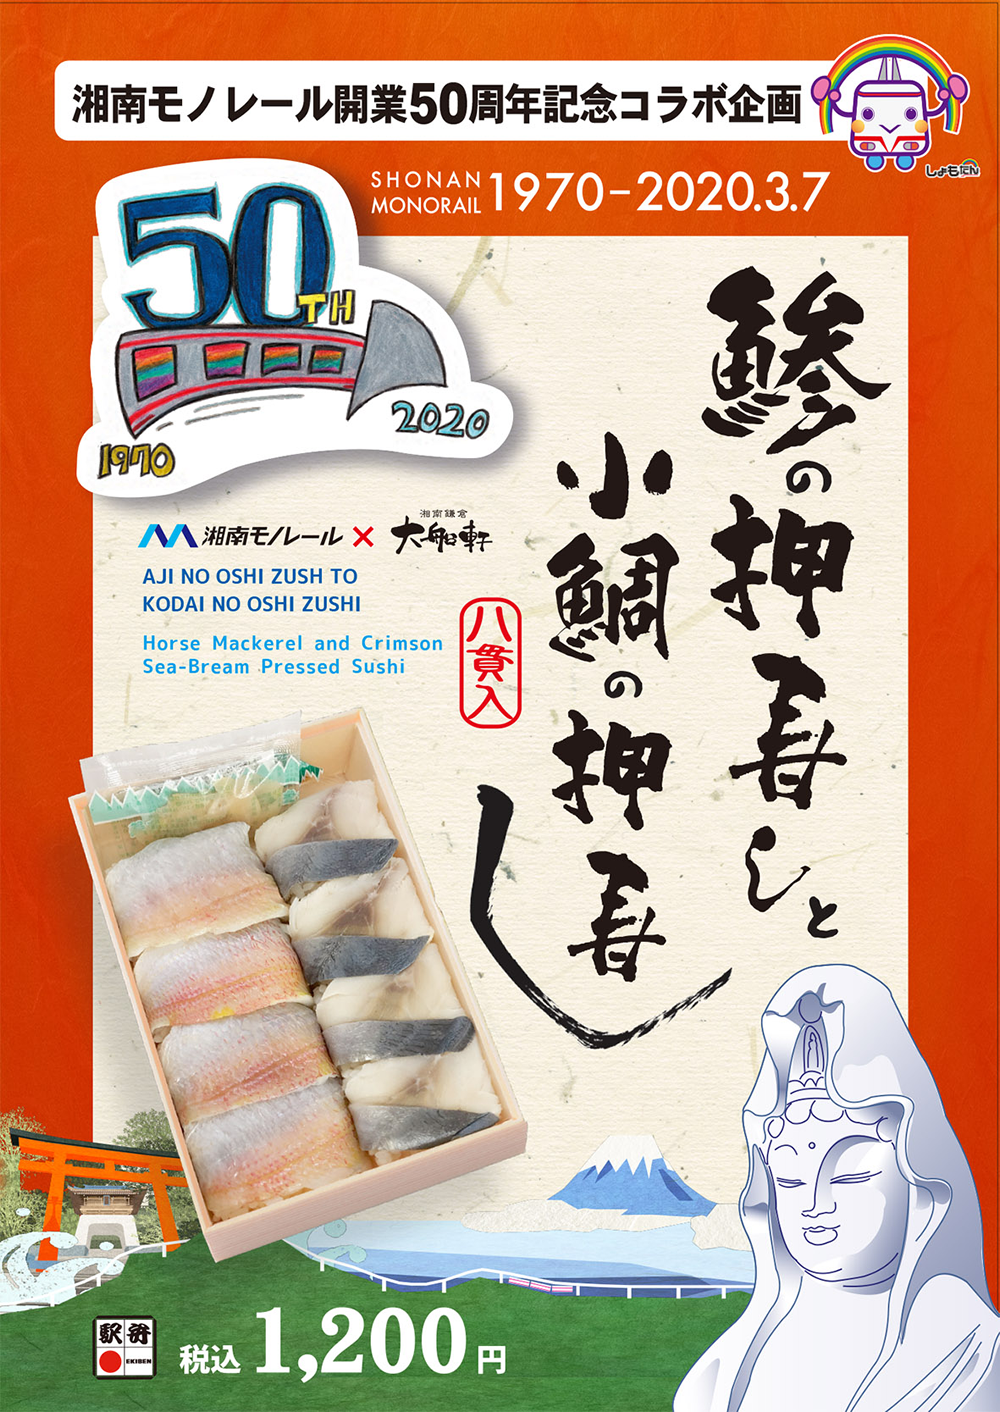 湘南モノレール開業50周年記念コラボ企画「鯵の押寿しと小鯛の押寿し」好評発売中